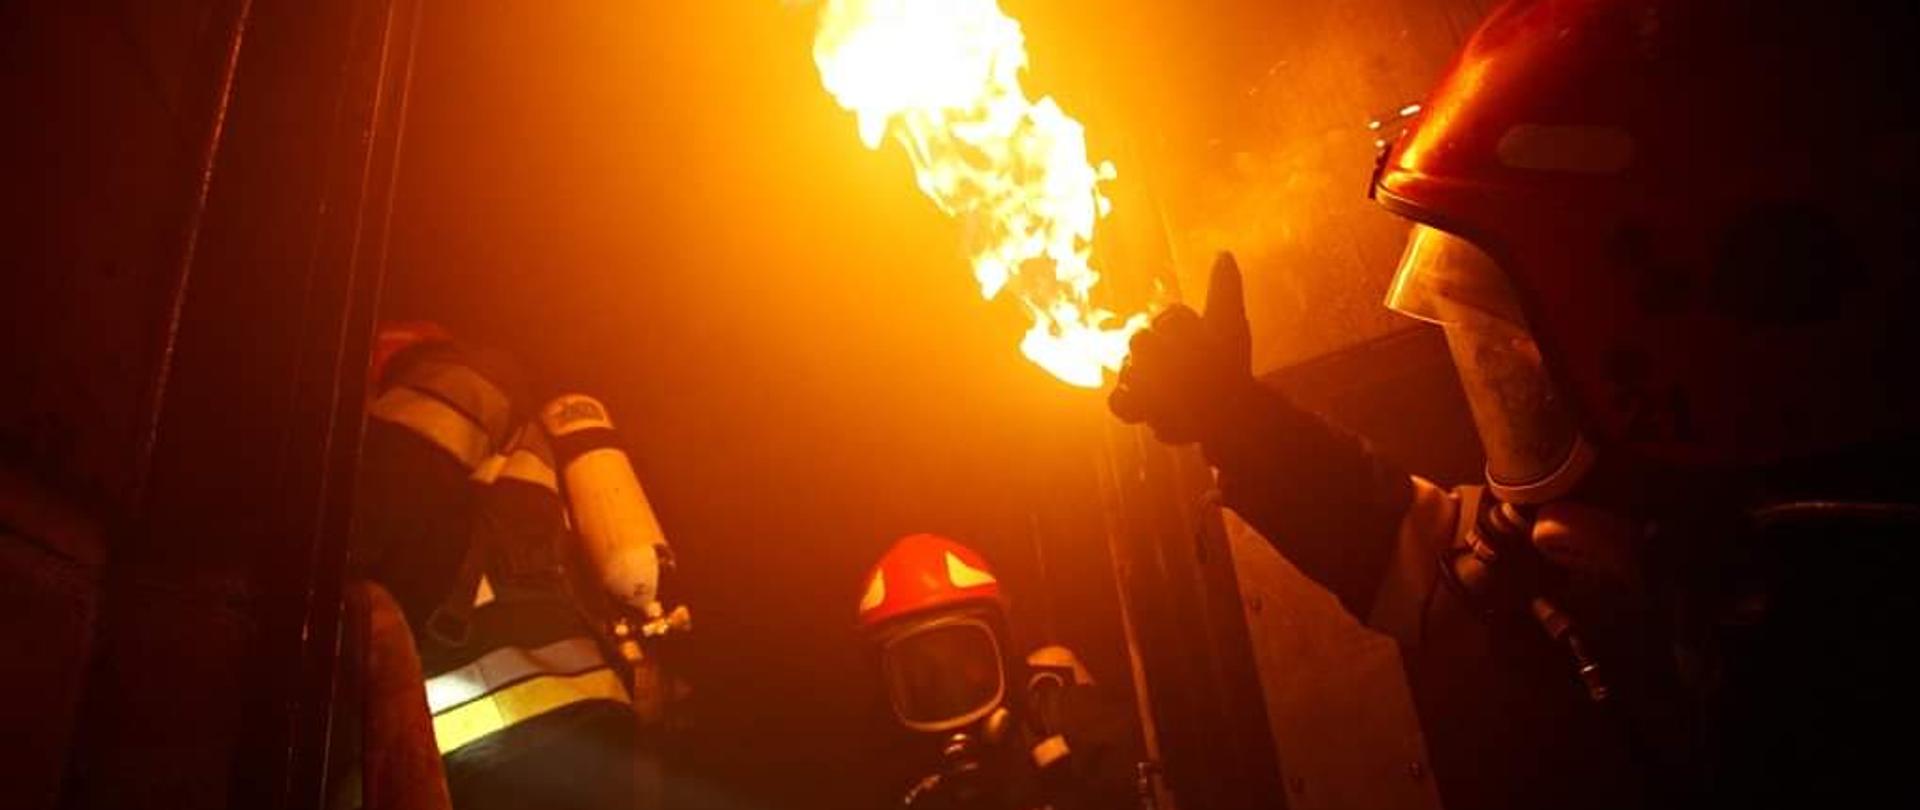  Ćwiczenia strażaków w komorze rozgorzeniowej, trzech strażaków w aparatach powietrznych oraz w hełmach robią unik przed płomieniem.